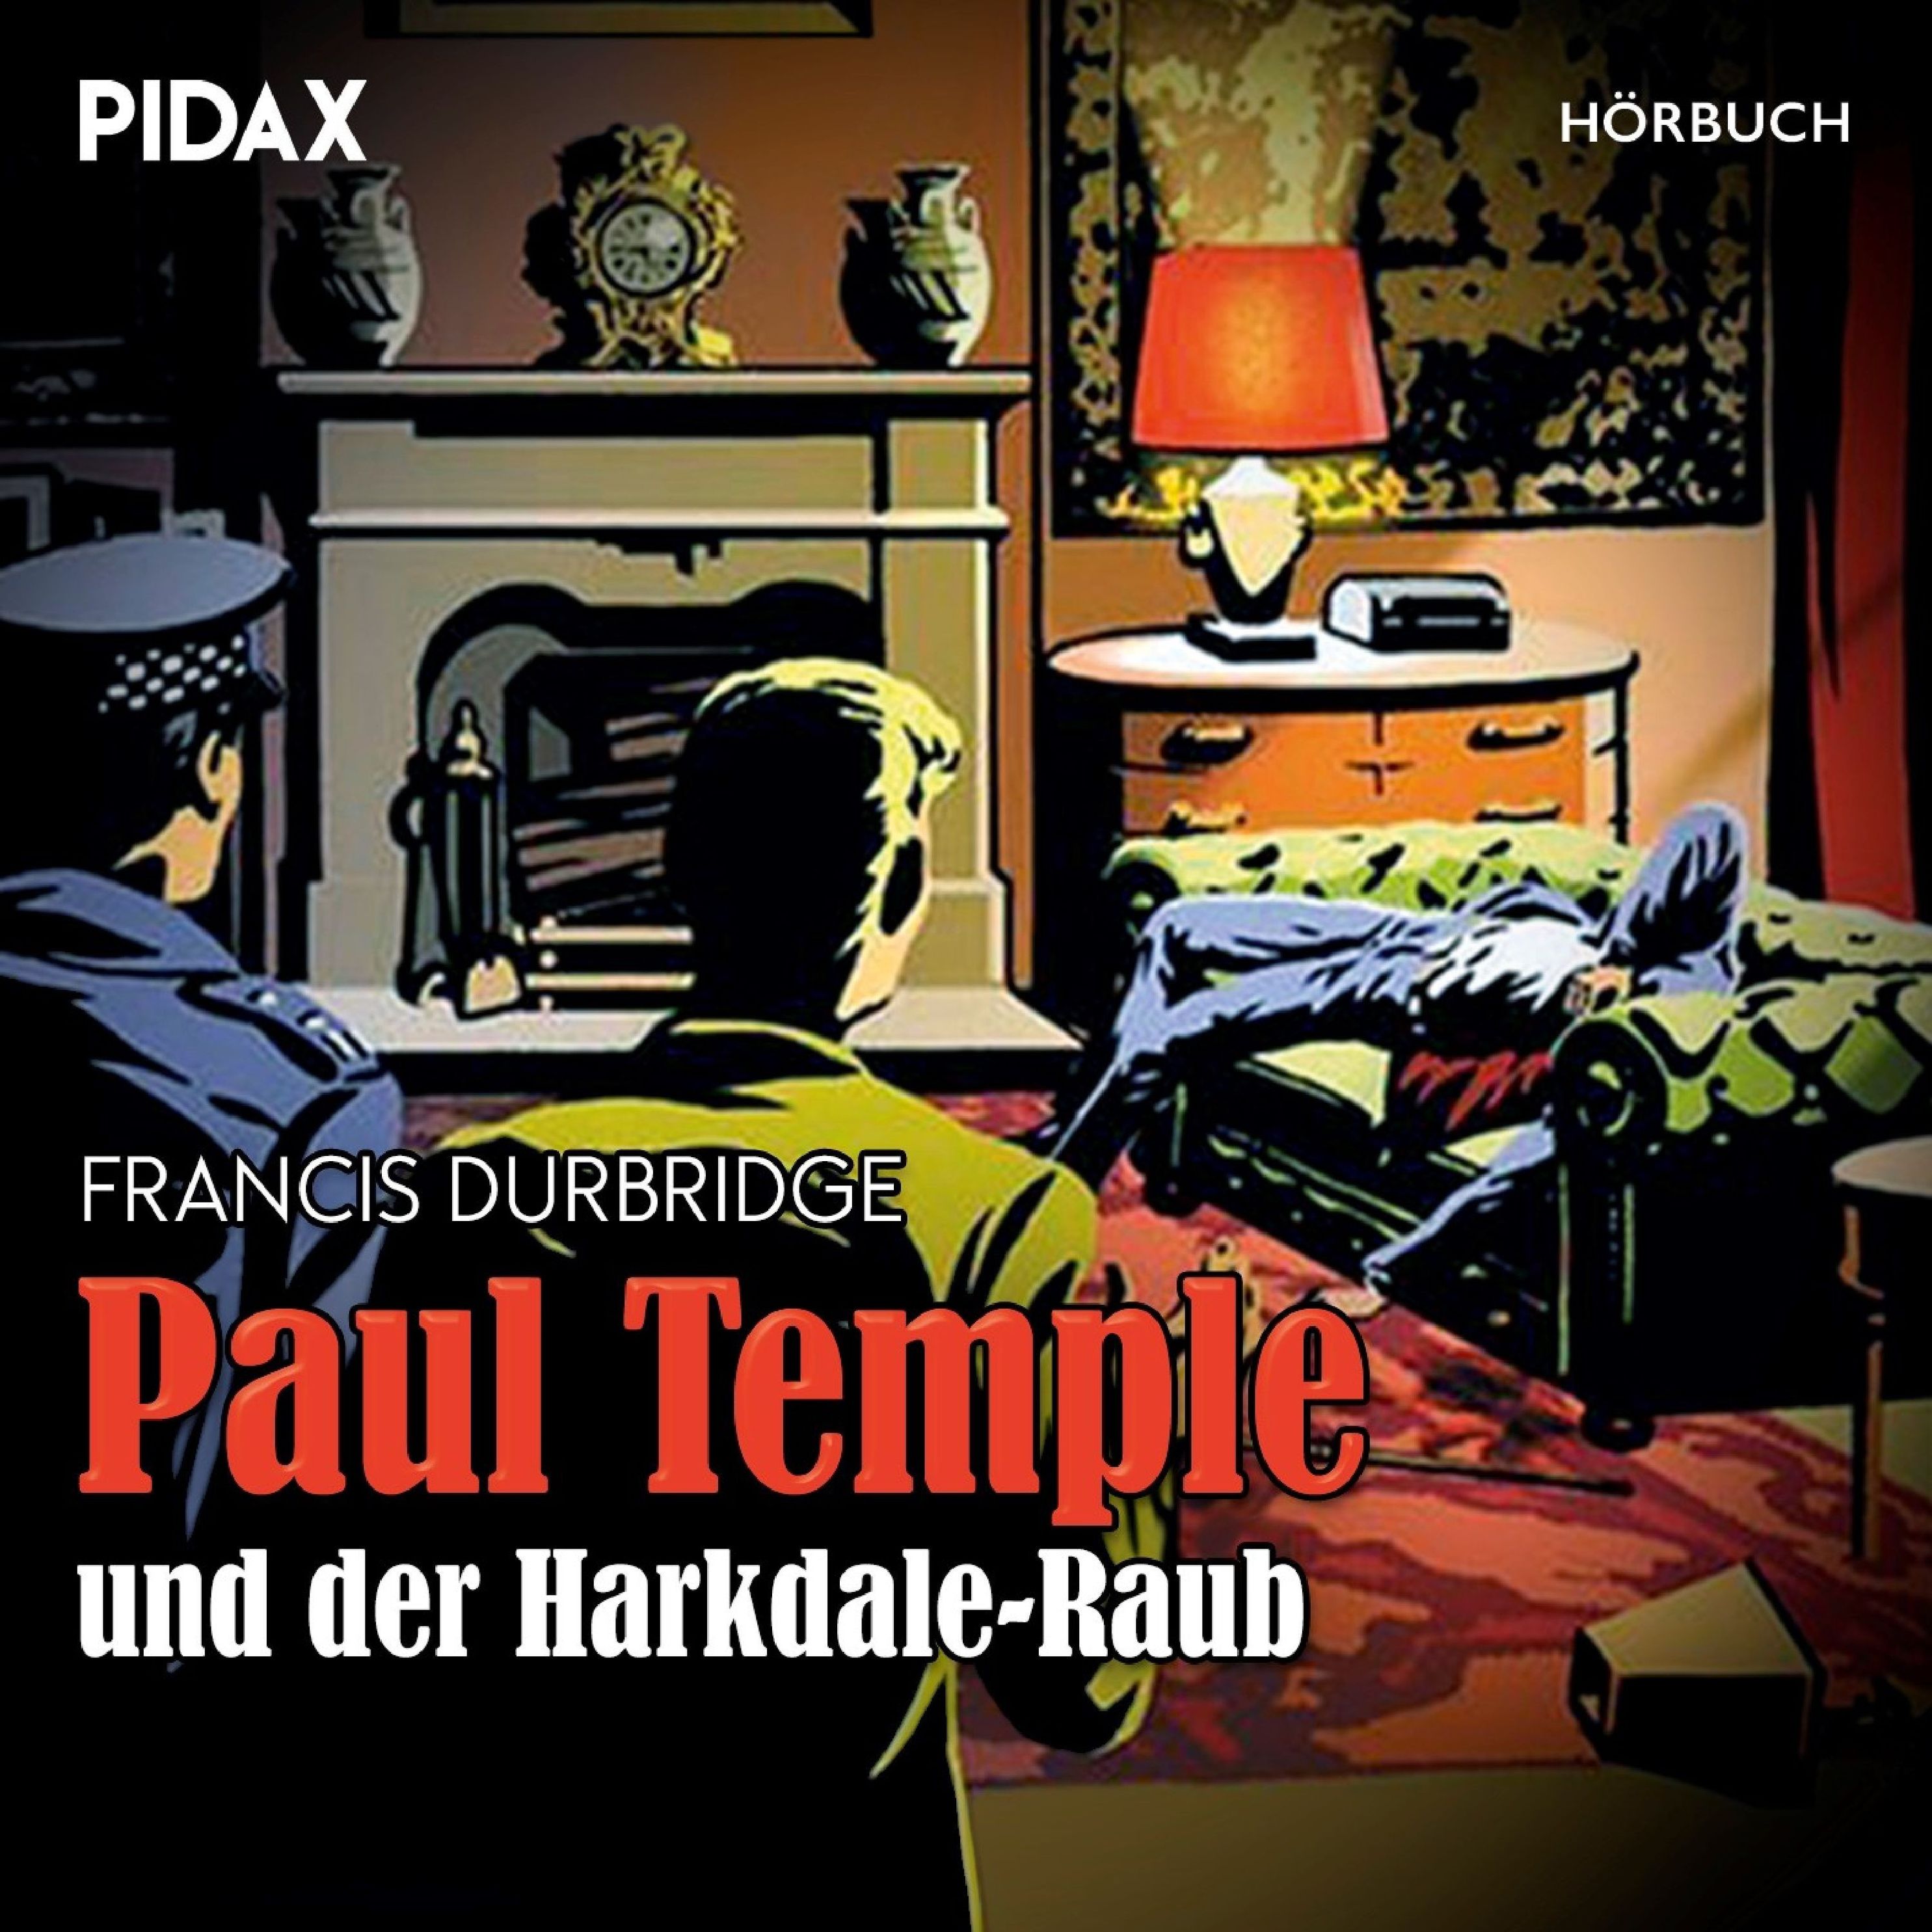 Paul Temple und der Harkdale-Raub Hörbuch Download | Weltbild